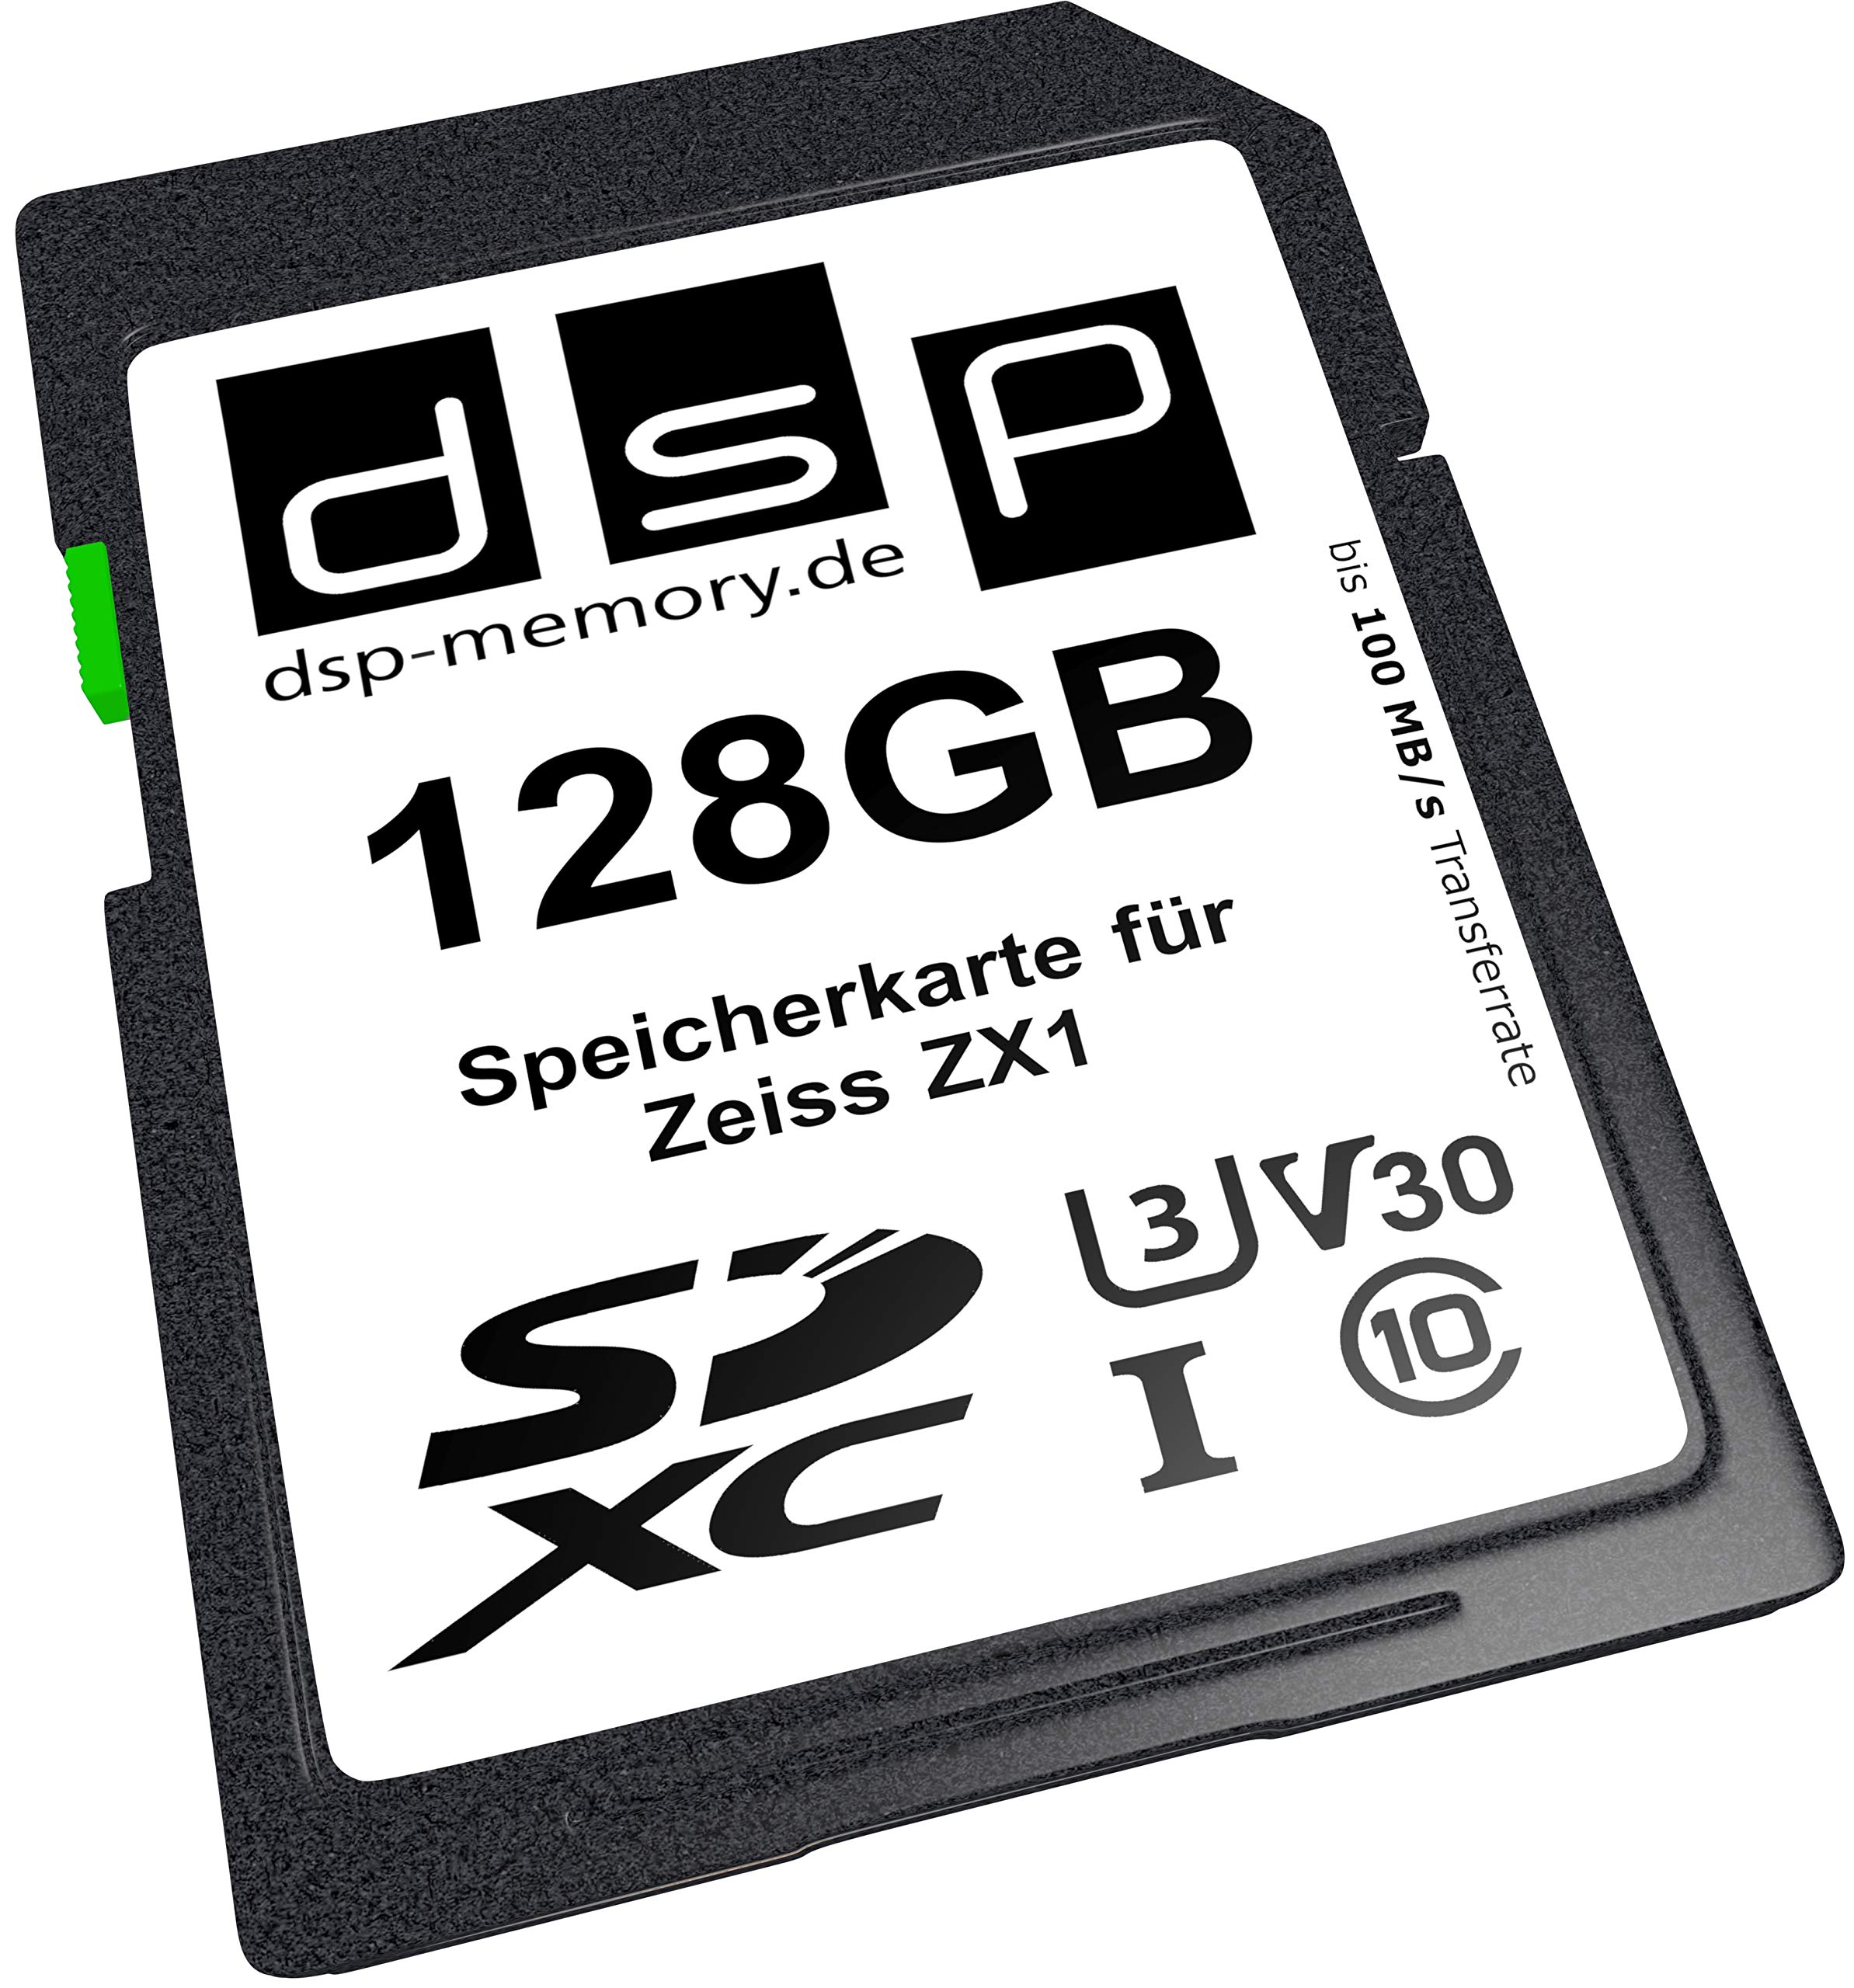 DSP Memory 128GB Professional V30 Speicherkarte für Zeiss ZX1 Digitalkamera